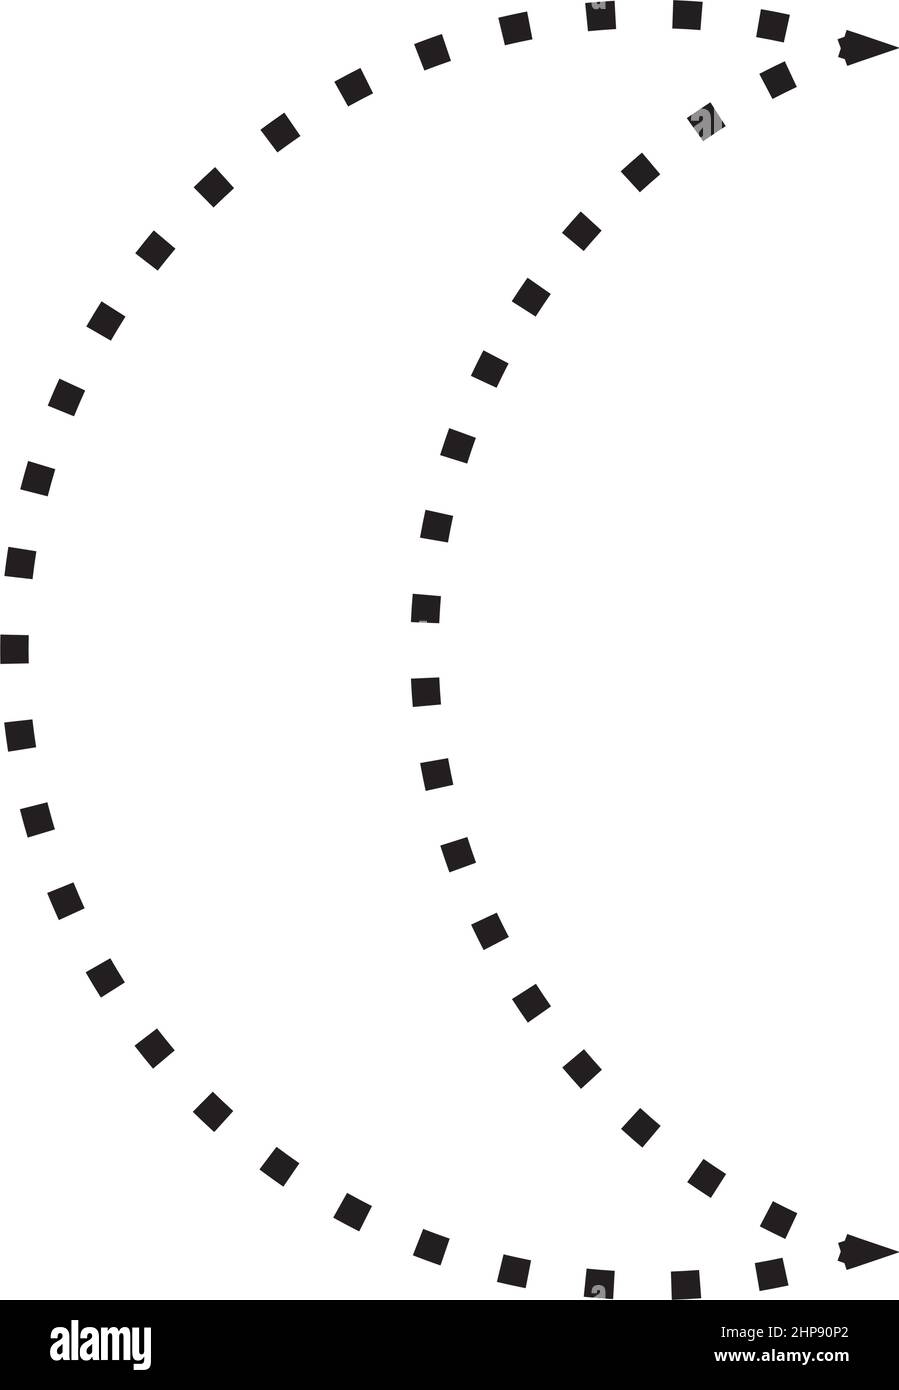 Simbolo a mezzaluna icona vettoriale a forma punteggiata per l'elemento dell'interfaccia utente di un disegno grafico creativo in un'illustrazione con pittogramma Illustrazione Vettoriale